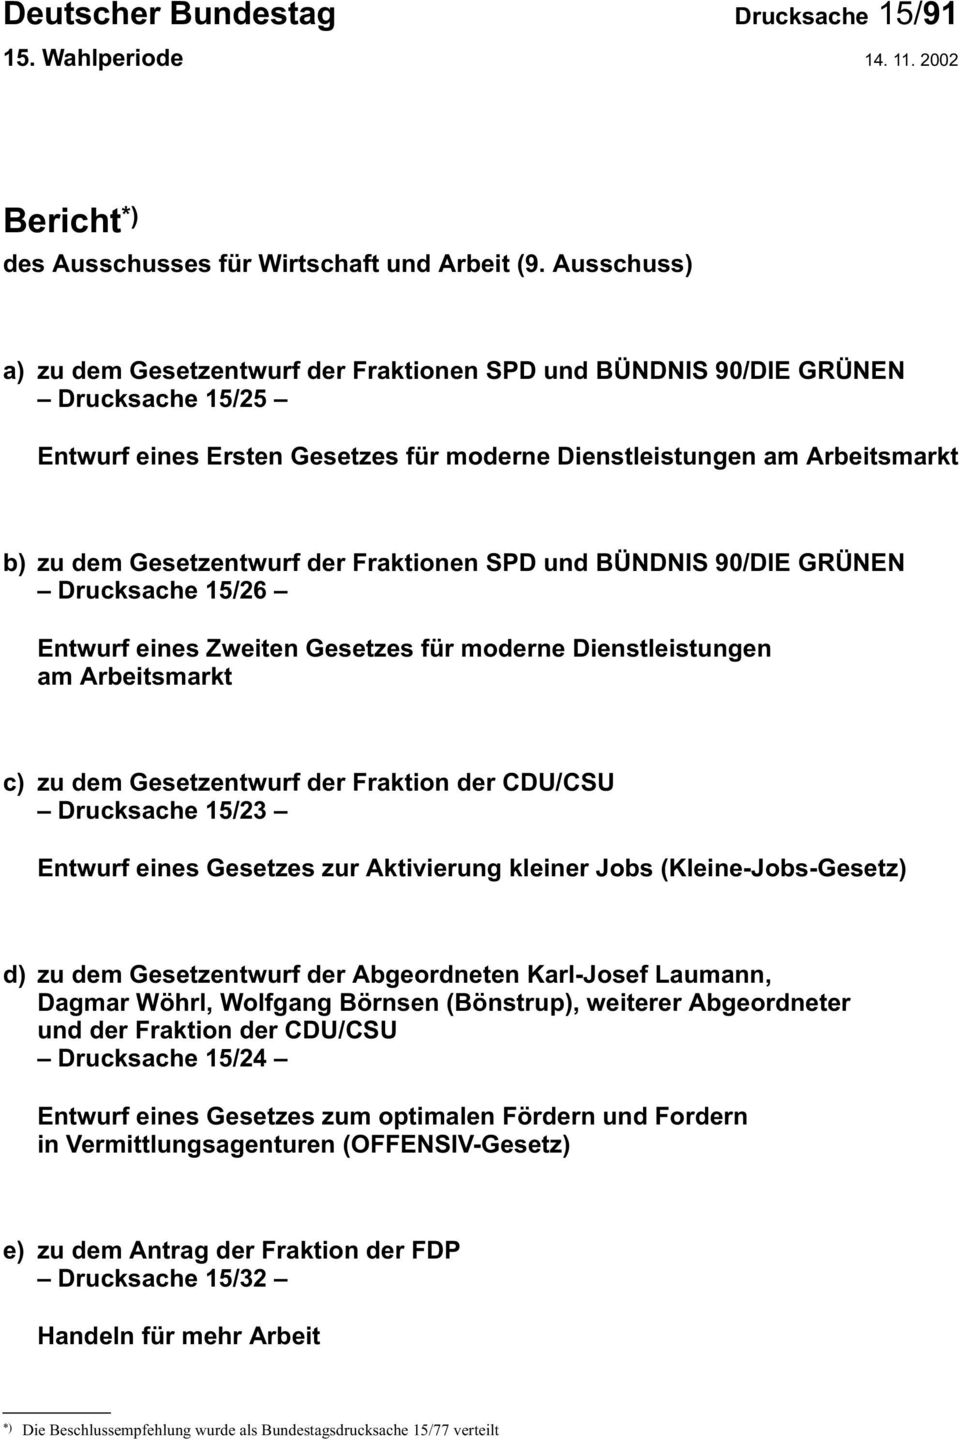 Fraktionen SPD und BÜNDNIS 90/DIE GRÜNEN Drucksache 15/26 Entwurf eines Zweiten Gesetzes für moderne Dienstleistungen am Arbeitsmarkt c) zu dem Gesetzentwurf der Fraktion der CDU/CSU Drucksache 15/23